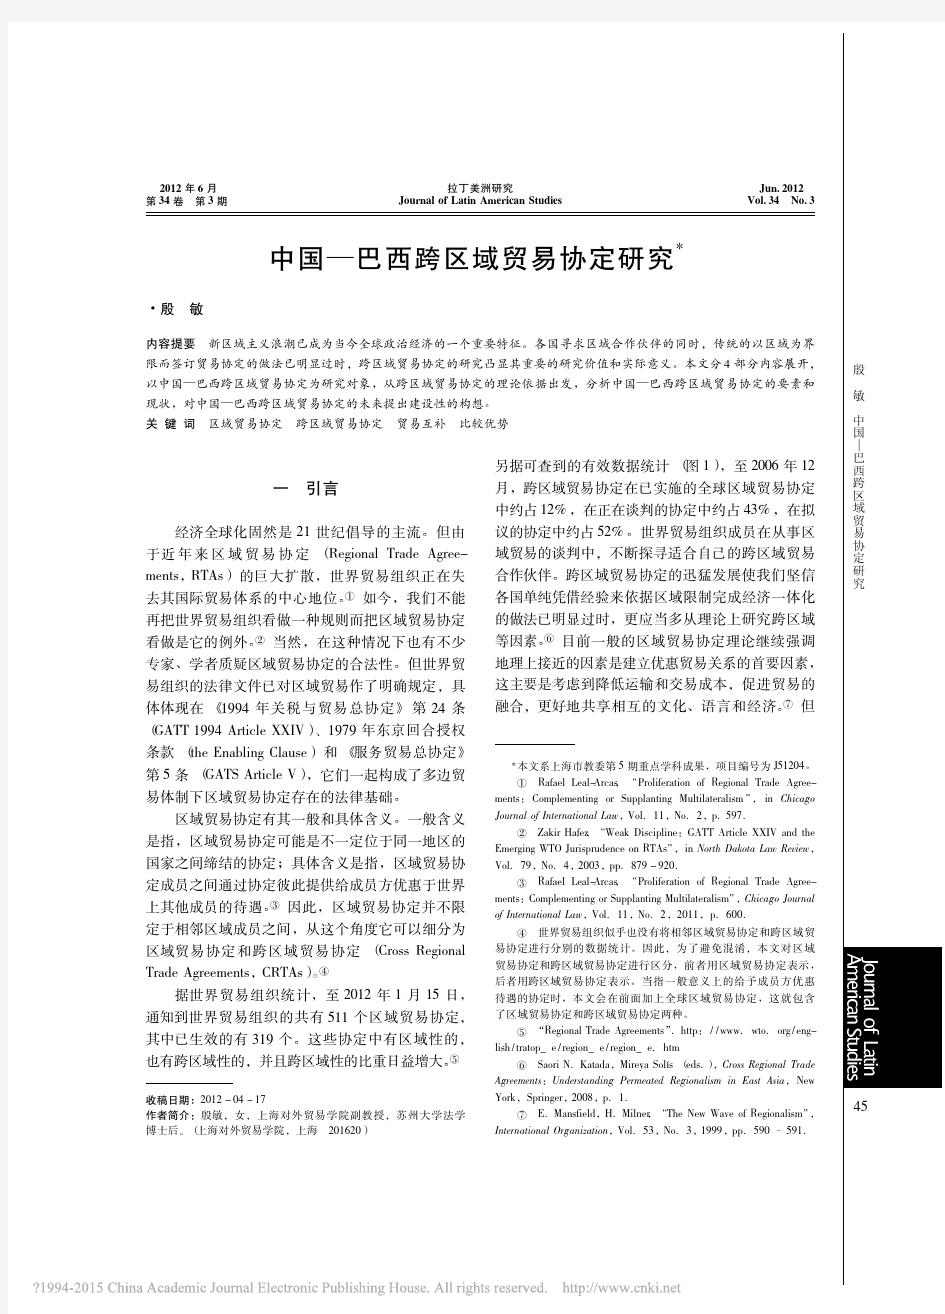 中国_巴西跨区域贸易协定研究_殷敏 (1)